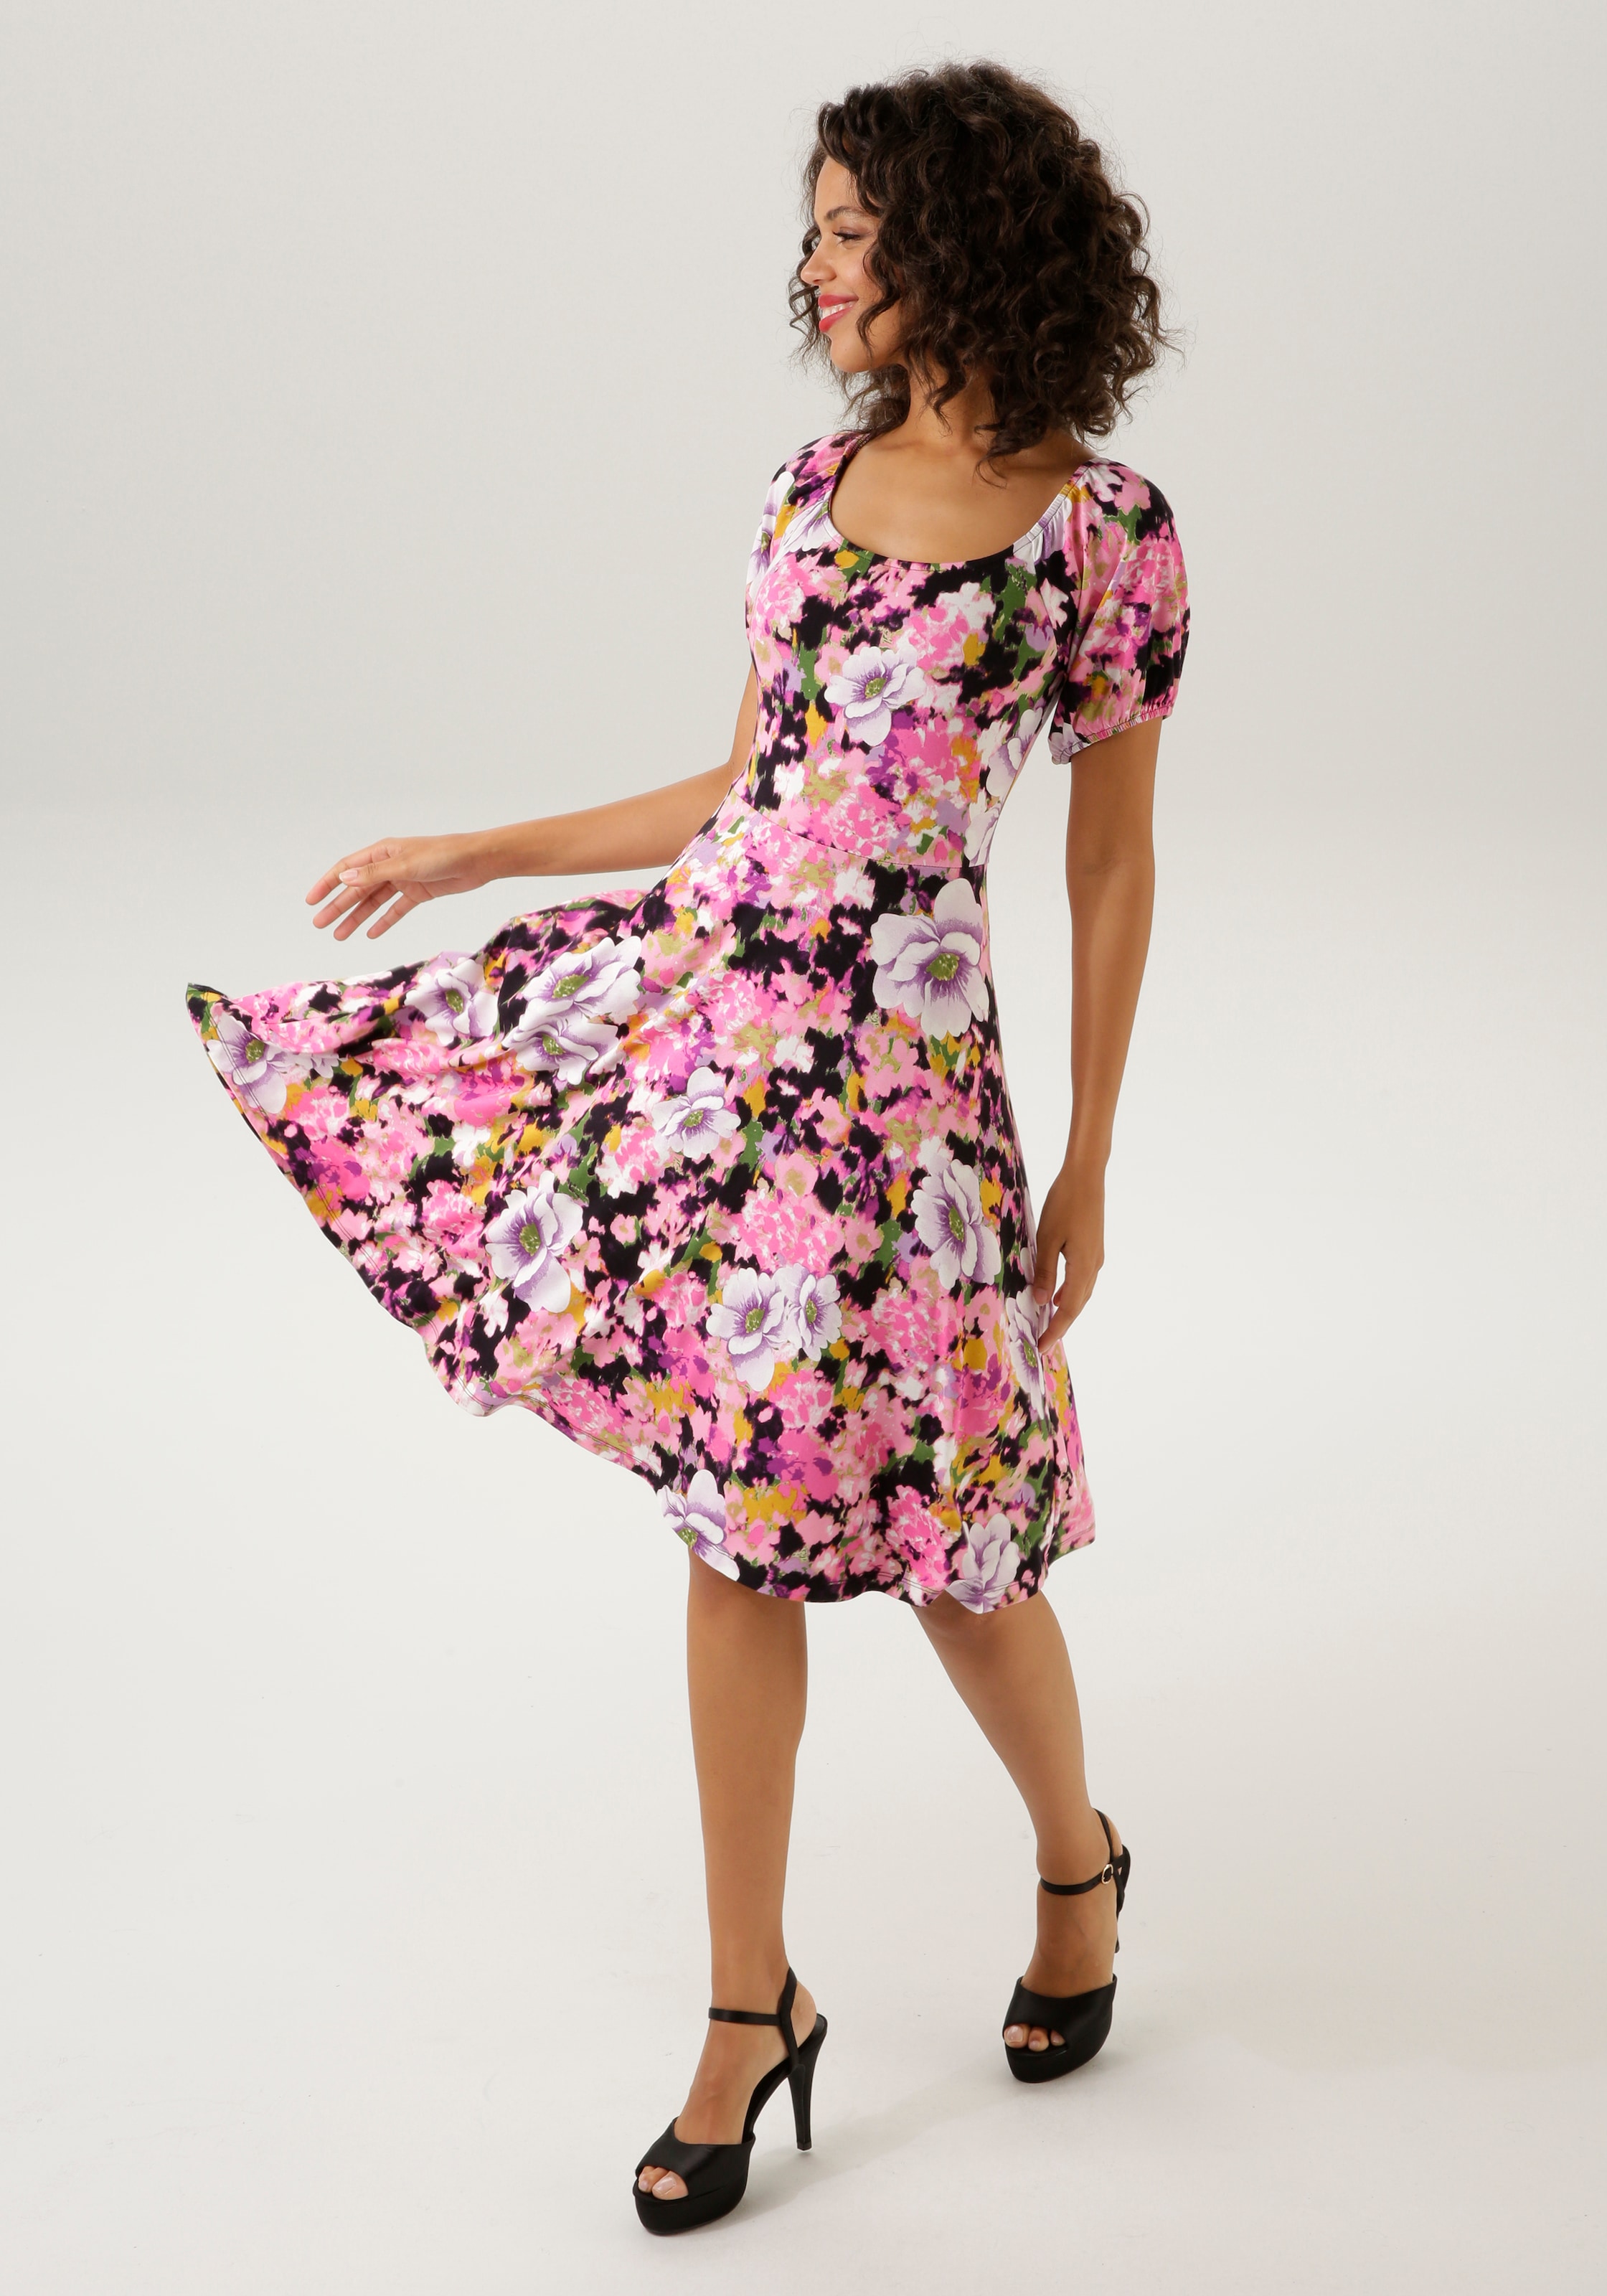 Unikat KOLLEKTION Aniston Teil farbenfrohem NEUE OTTO Sommerkleid, jedes CASUAL Blumendruck Shop mit im - ein - Online